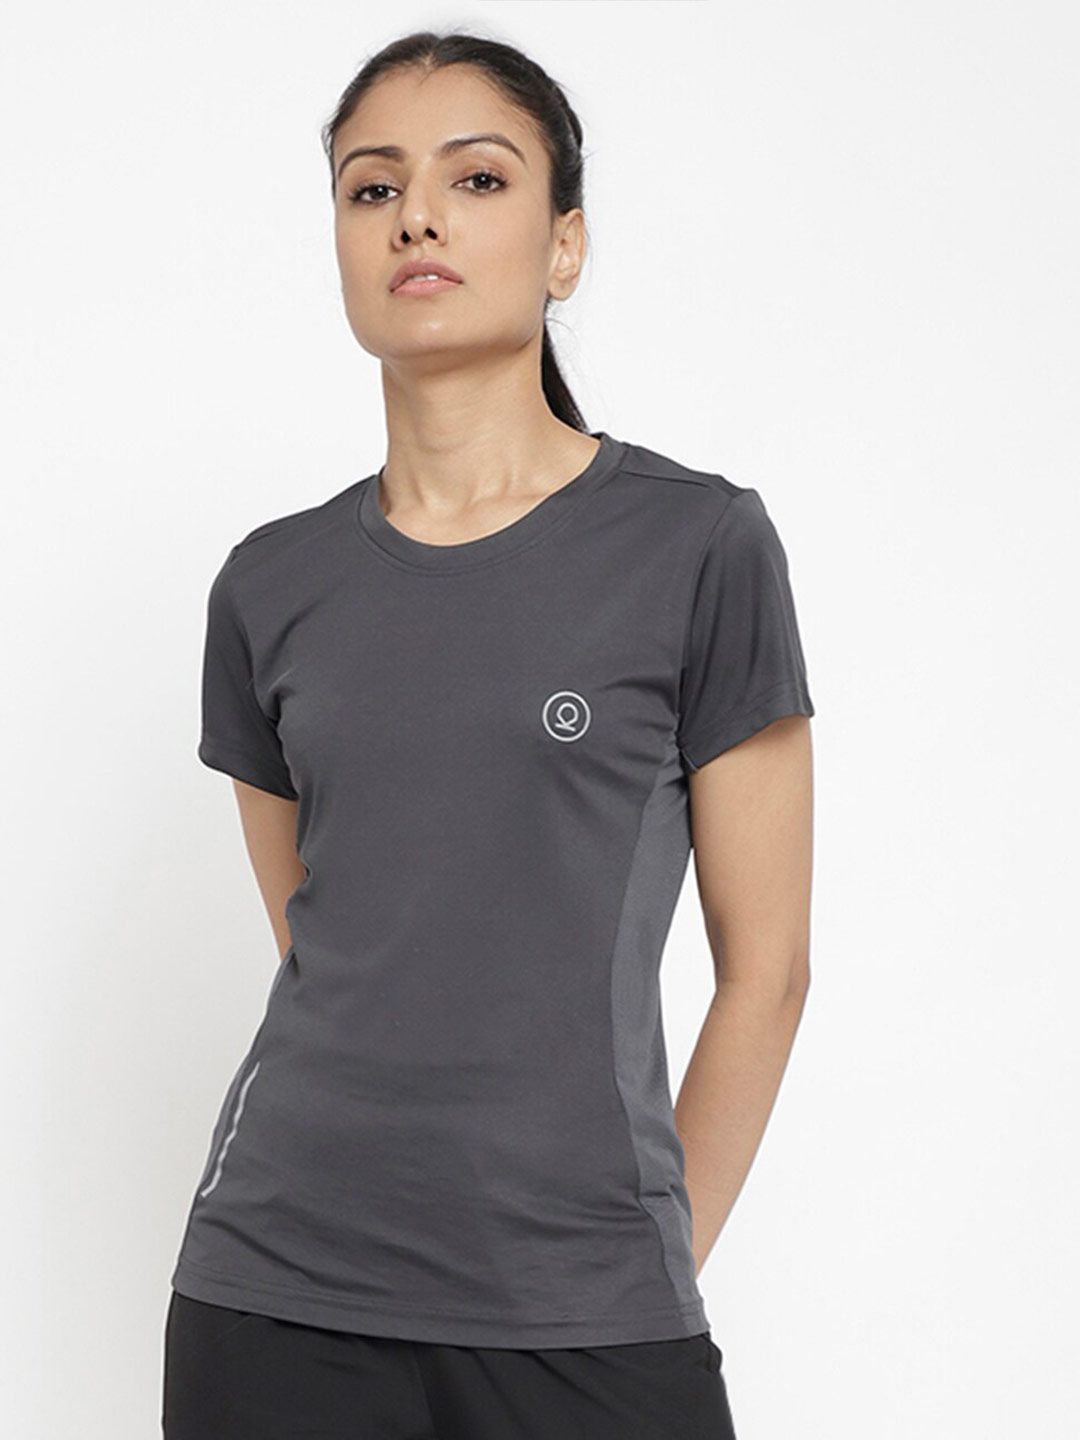 Chkokko Women Grey Melange Sports T-shirt Price in India